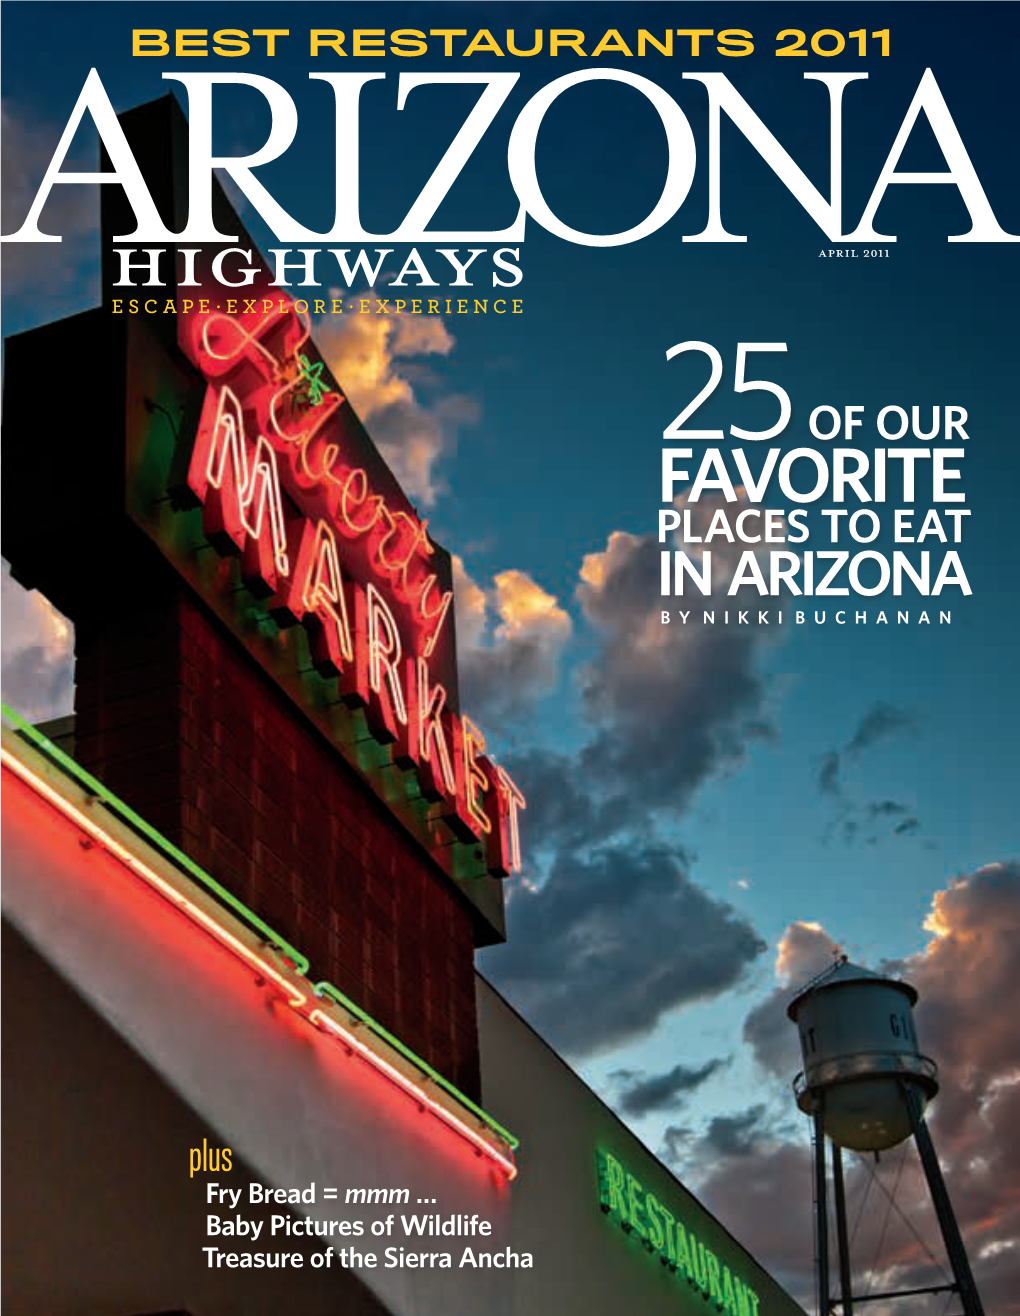 Favorite Places to Eat in Arizona by Nikki Buchanan